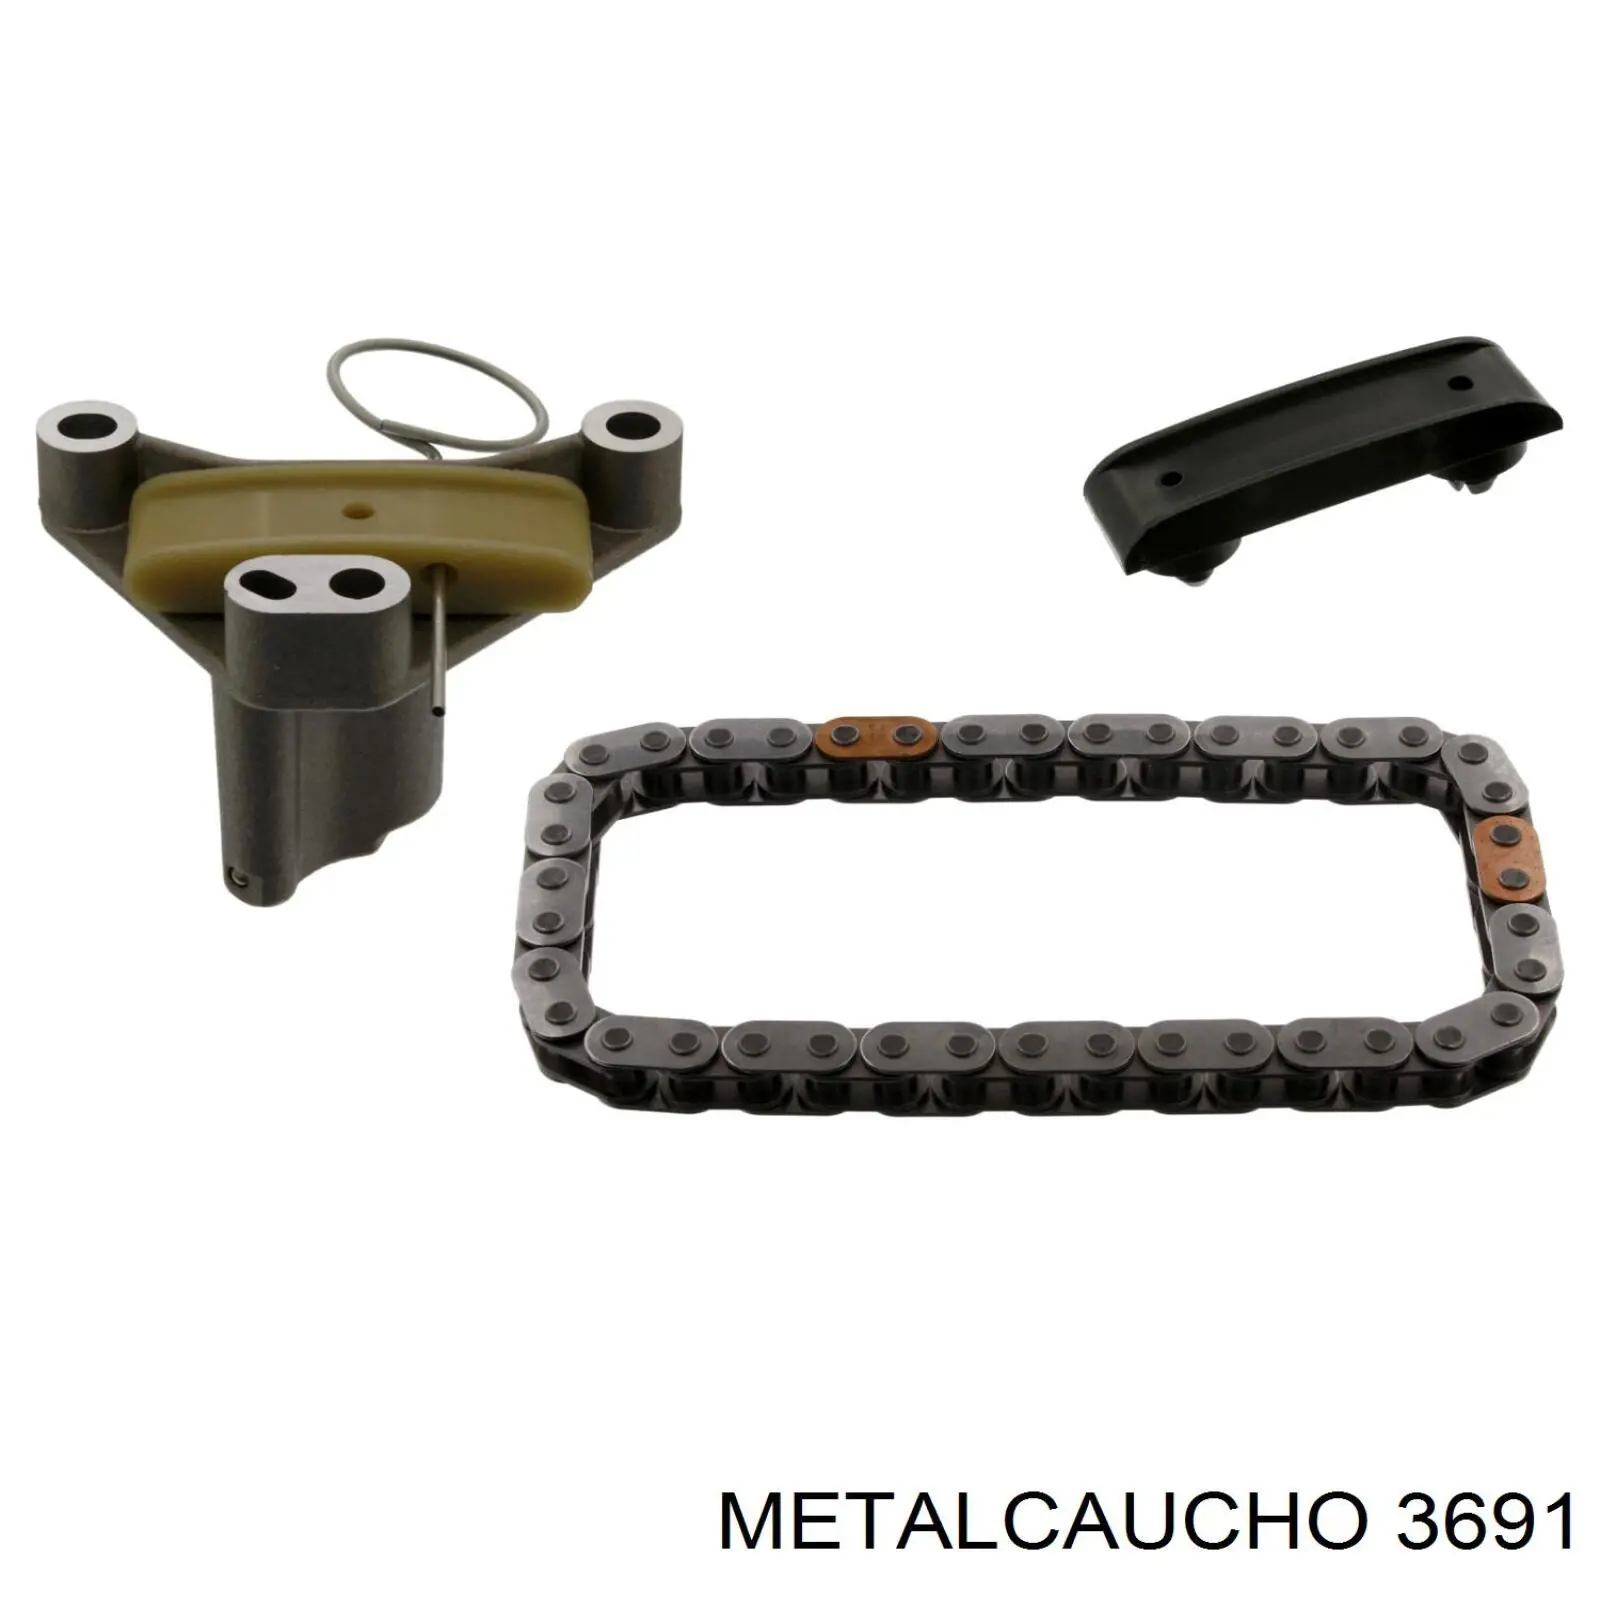 3691 Metalcaucho soporte caja de cambios palanca selectora